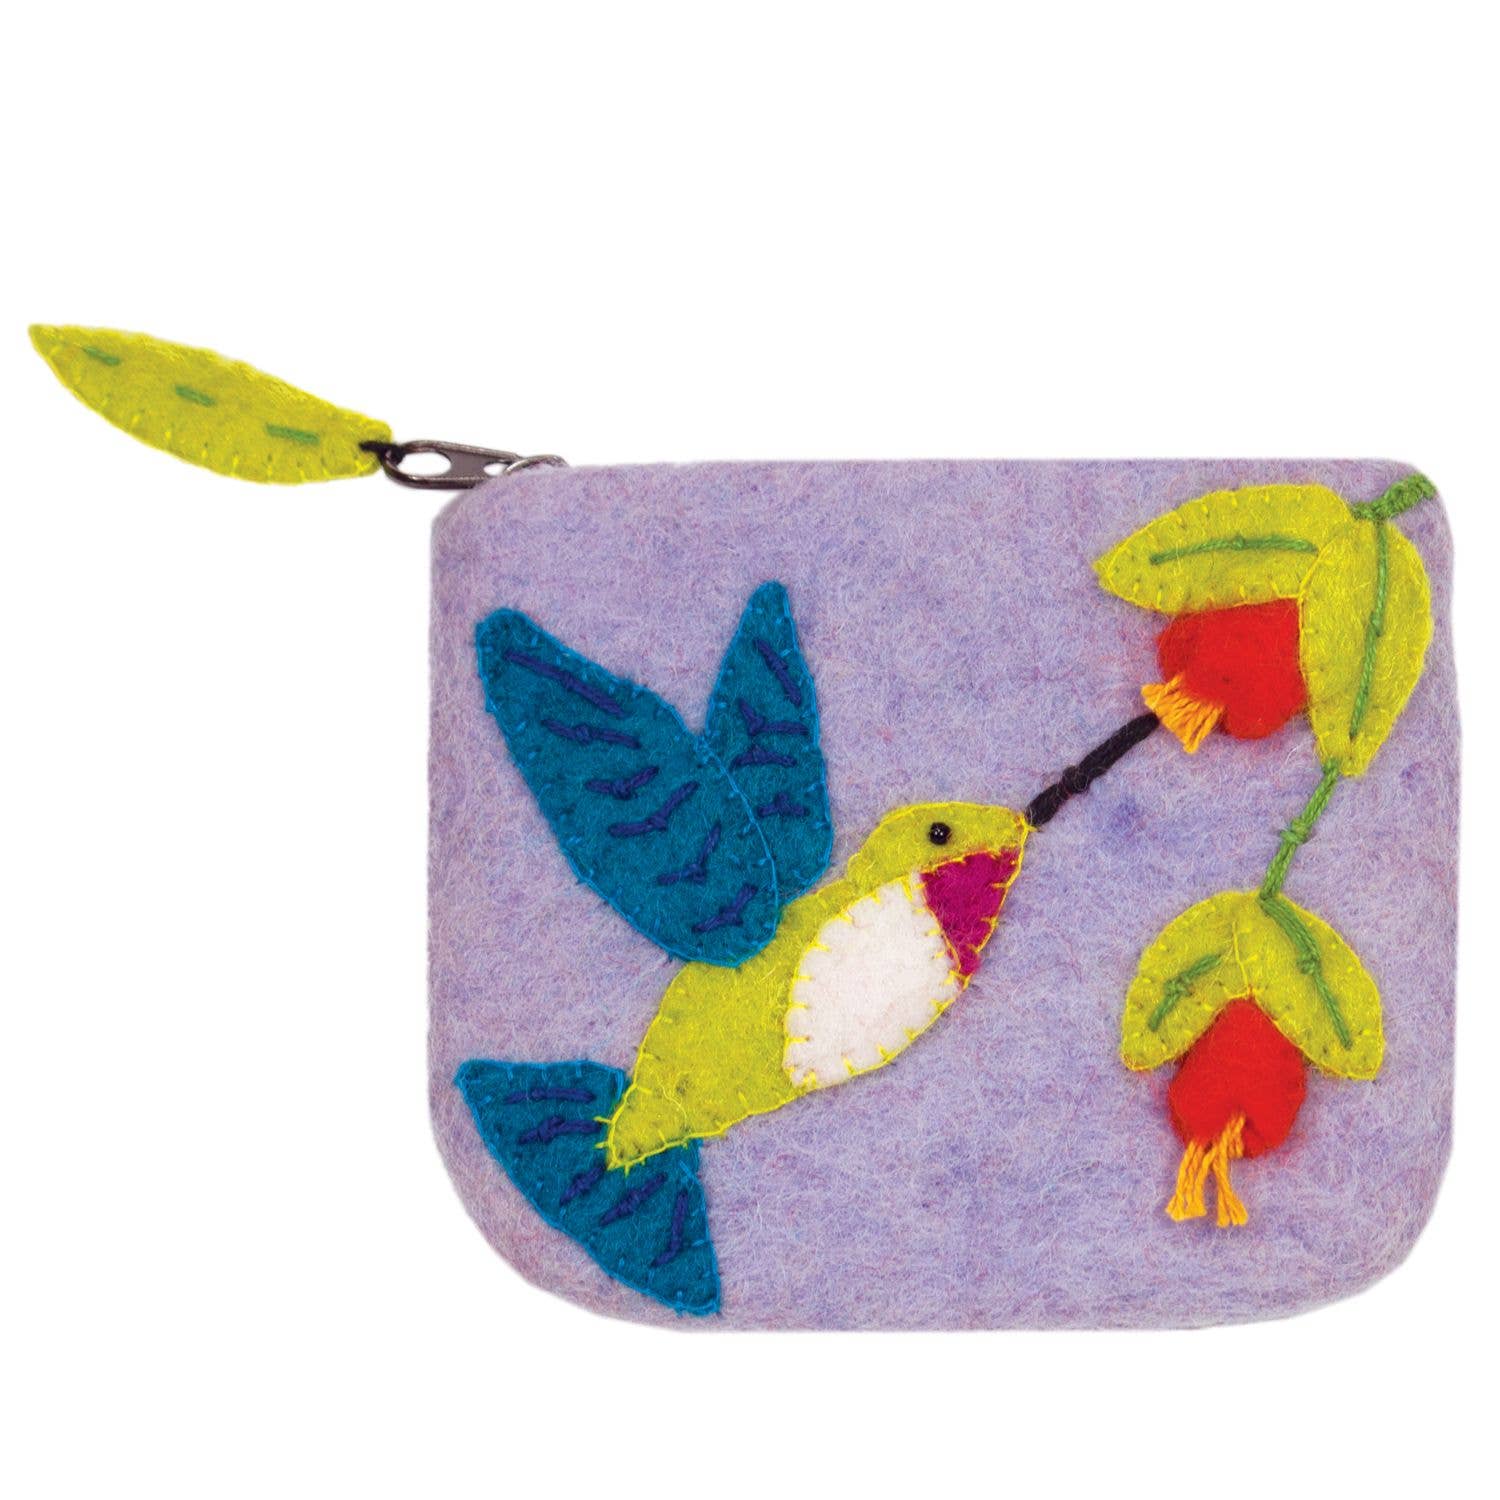 Hummingbird Coinpurse dZi Handmade